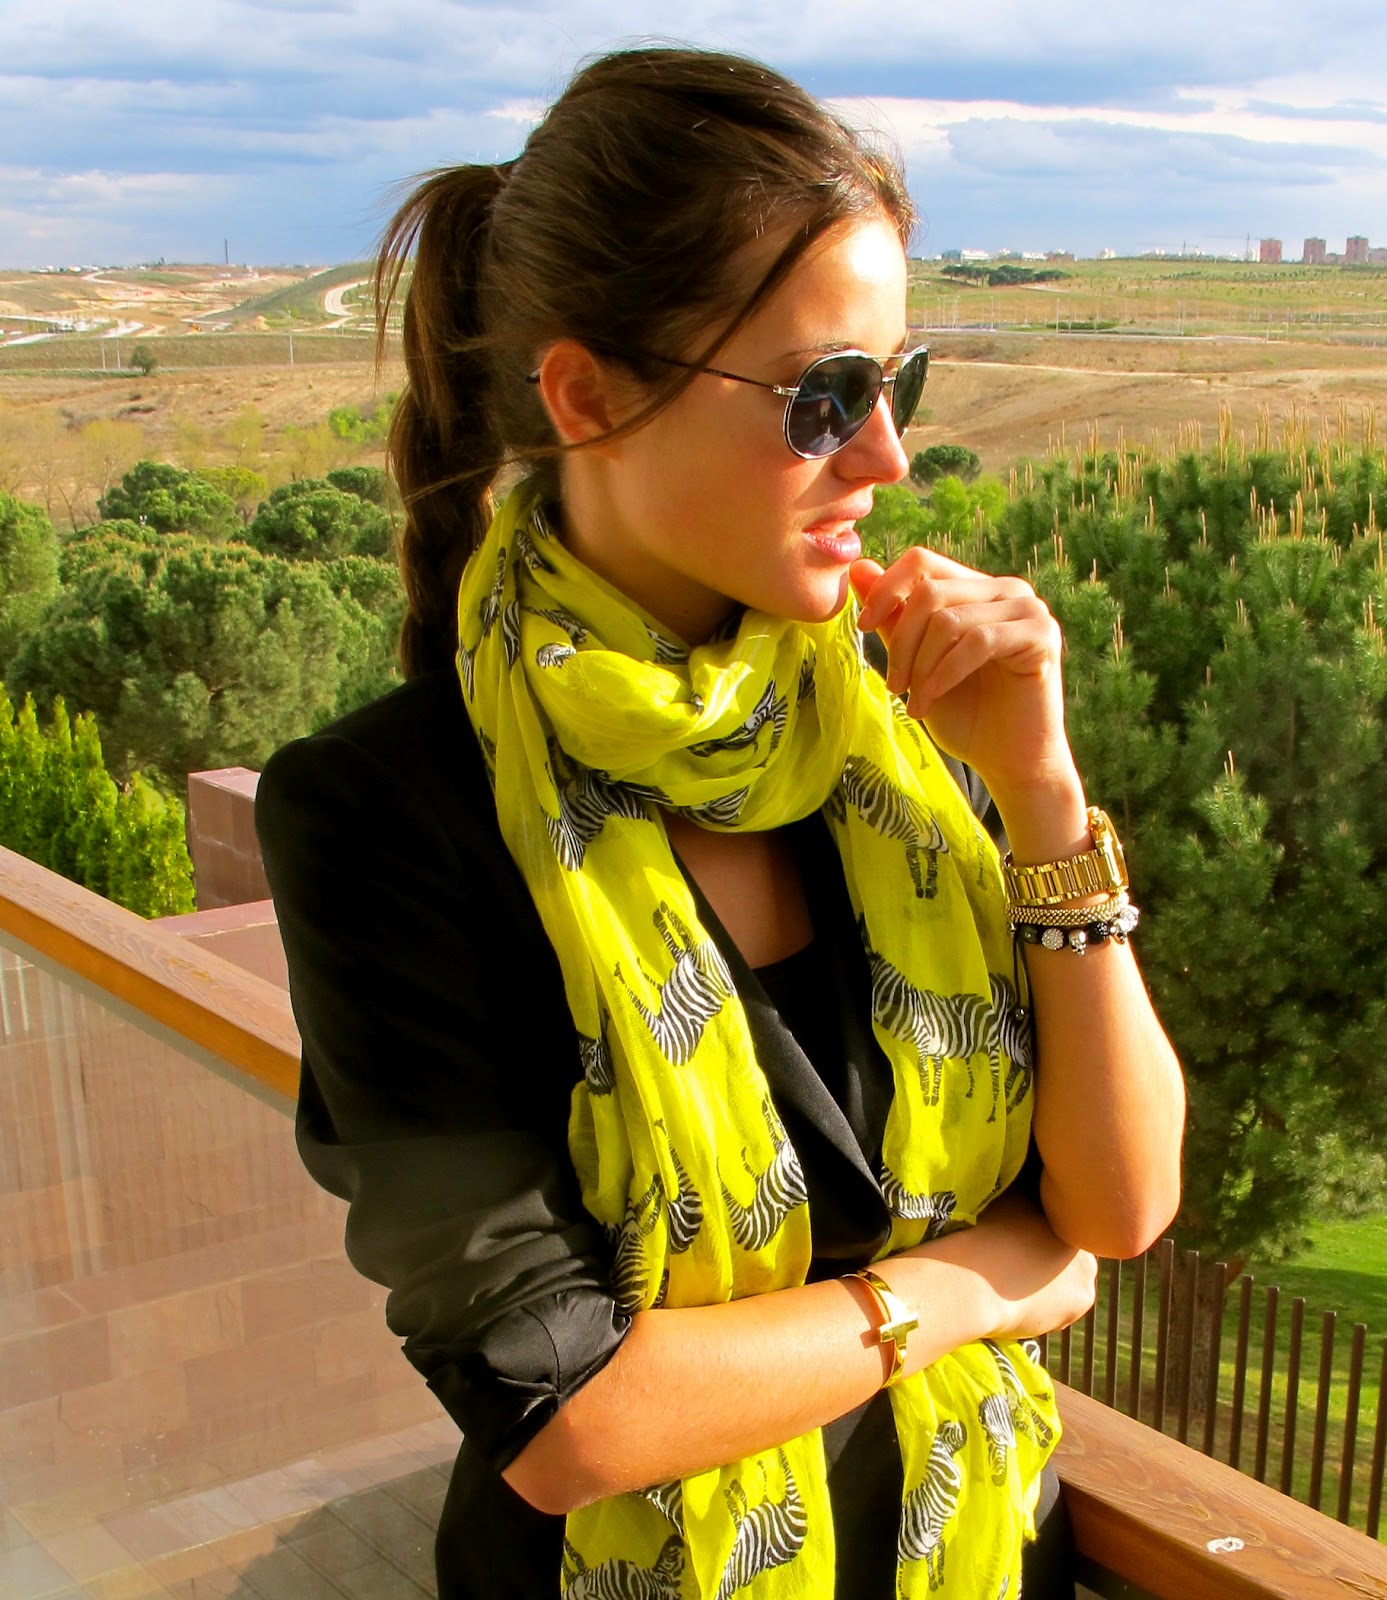 Blog de Malena Costa: Un foulard puede cambiar todo el look! Love FLUOR!